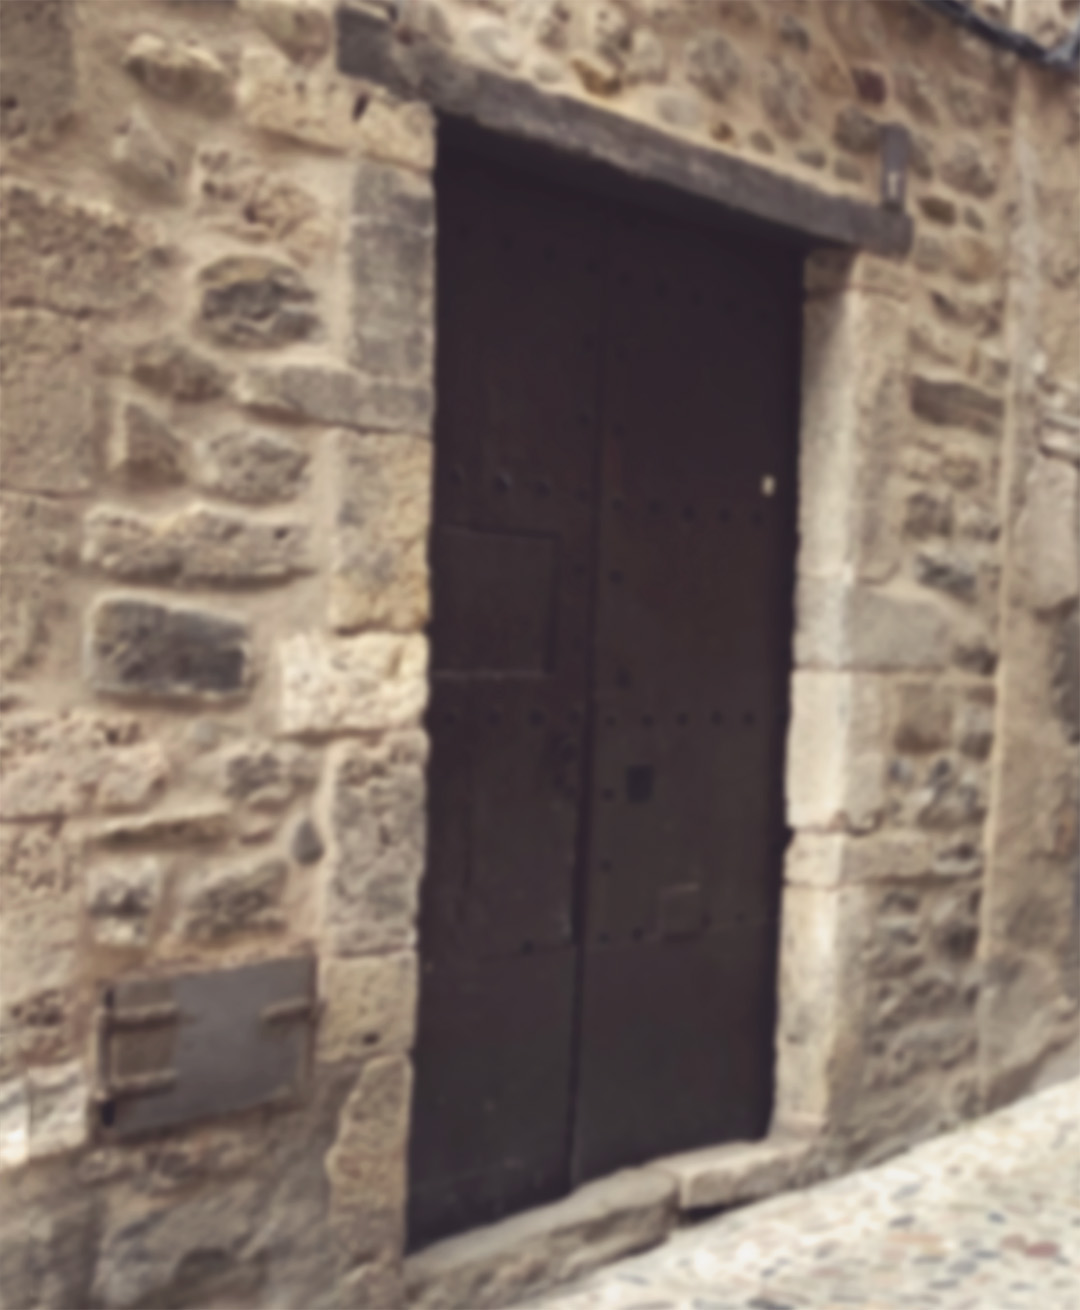 A secret speakeasy door in a back alley